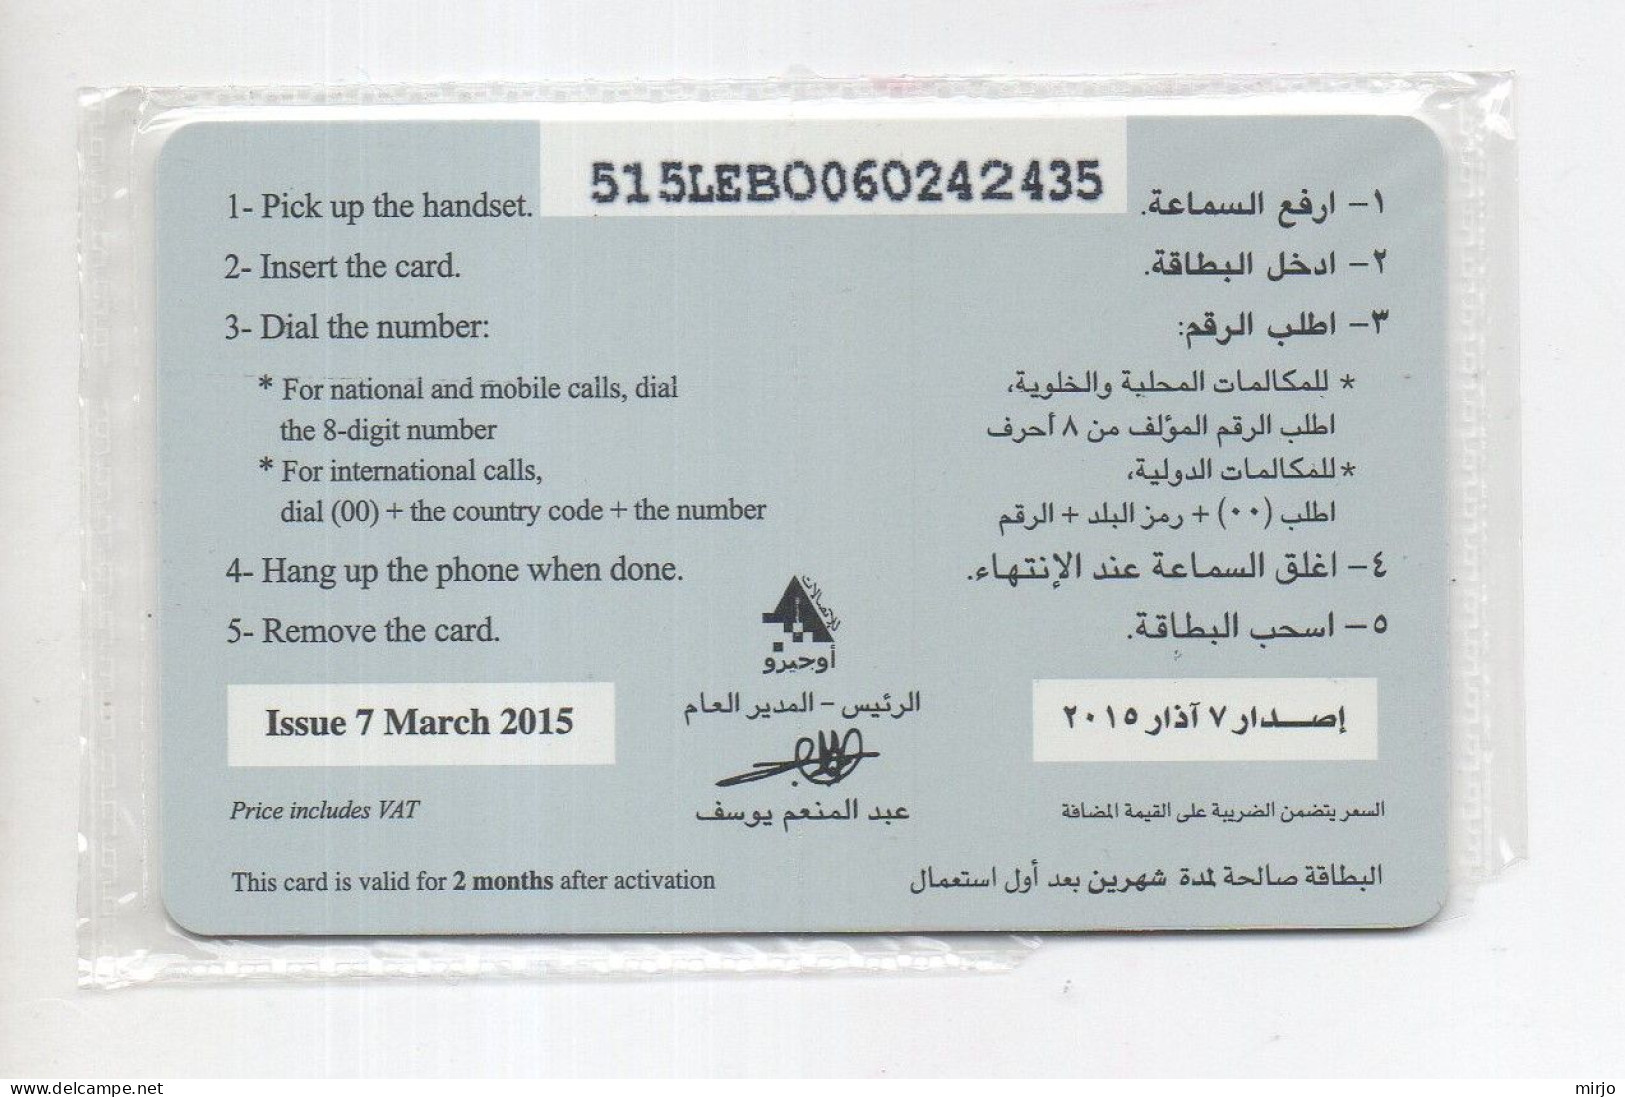 Lebanon Unused Phonecard 2015 Telecarte Liban - Liban